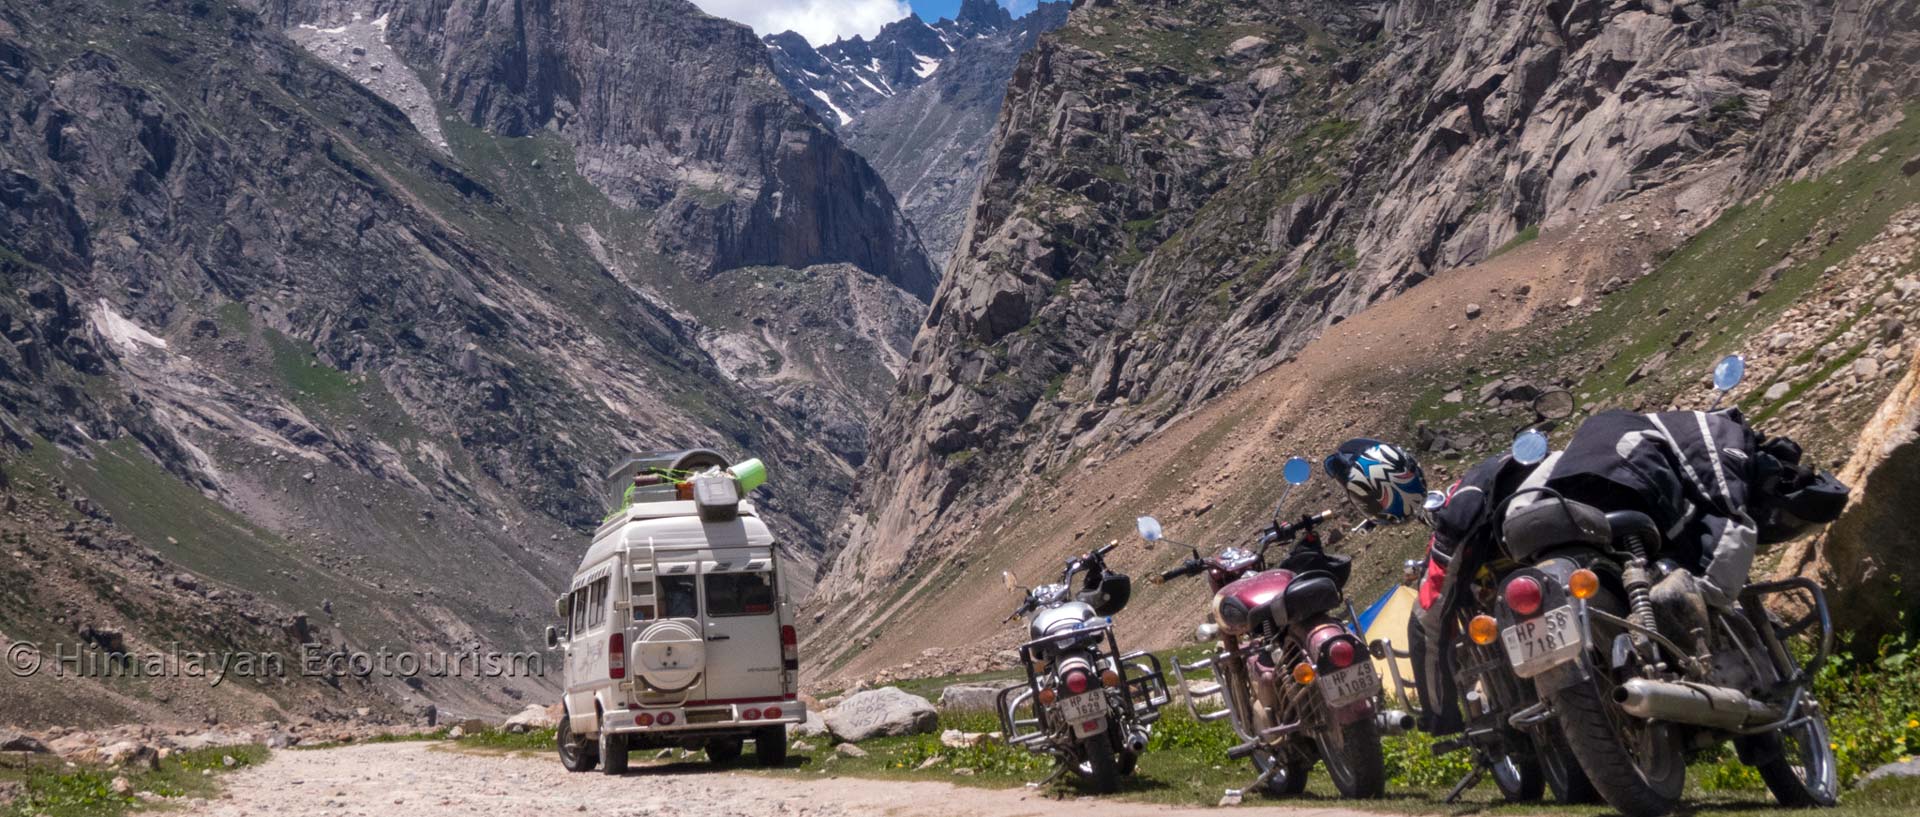 Adventure tour in Himachal Pradesh with Himalayan Ecotourism